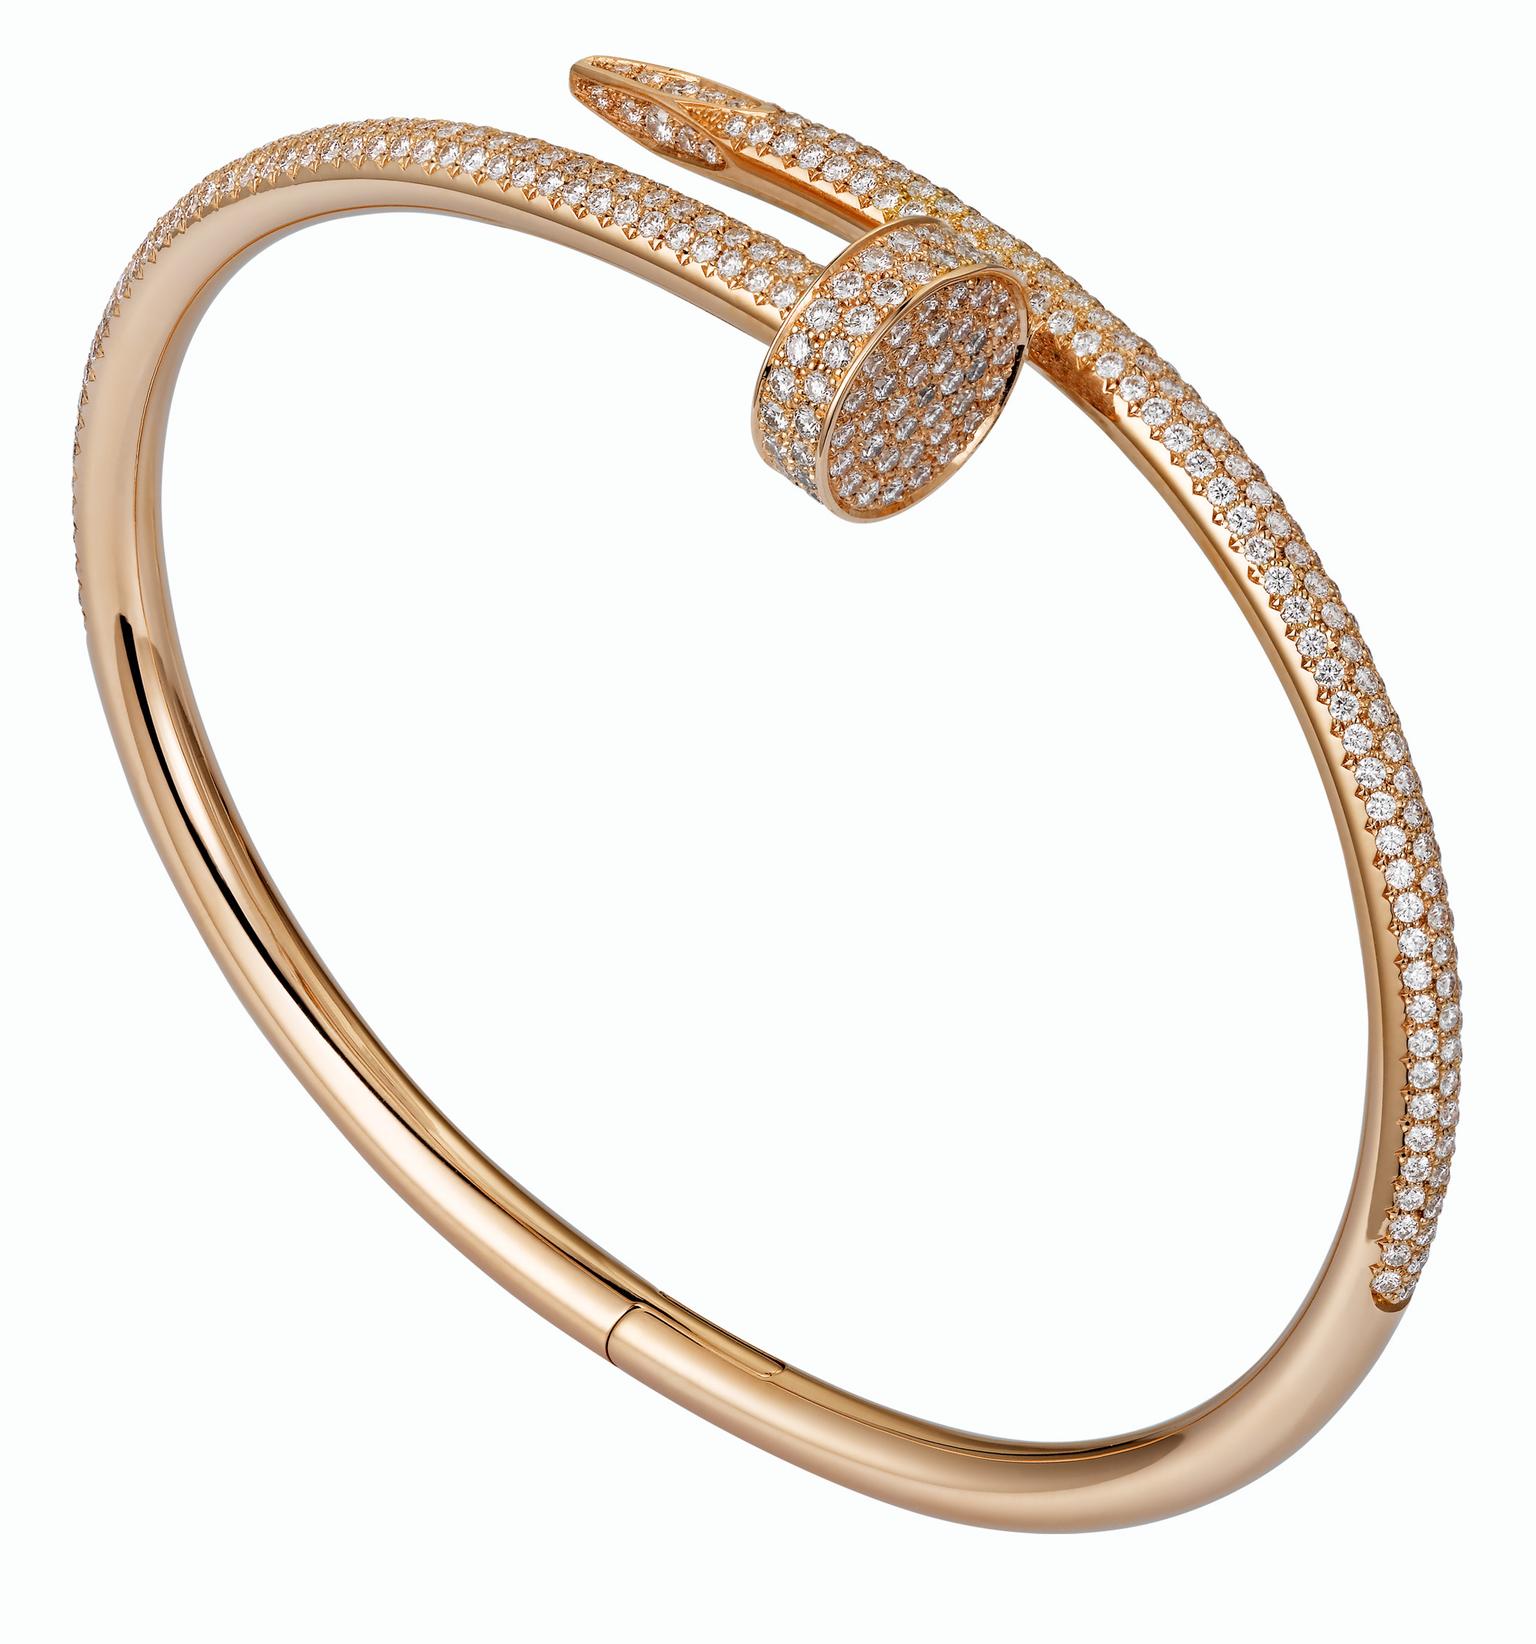 Cartier Juste un Clou pink gold and part pave diamond bracelet